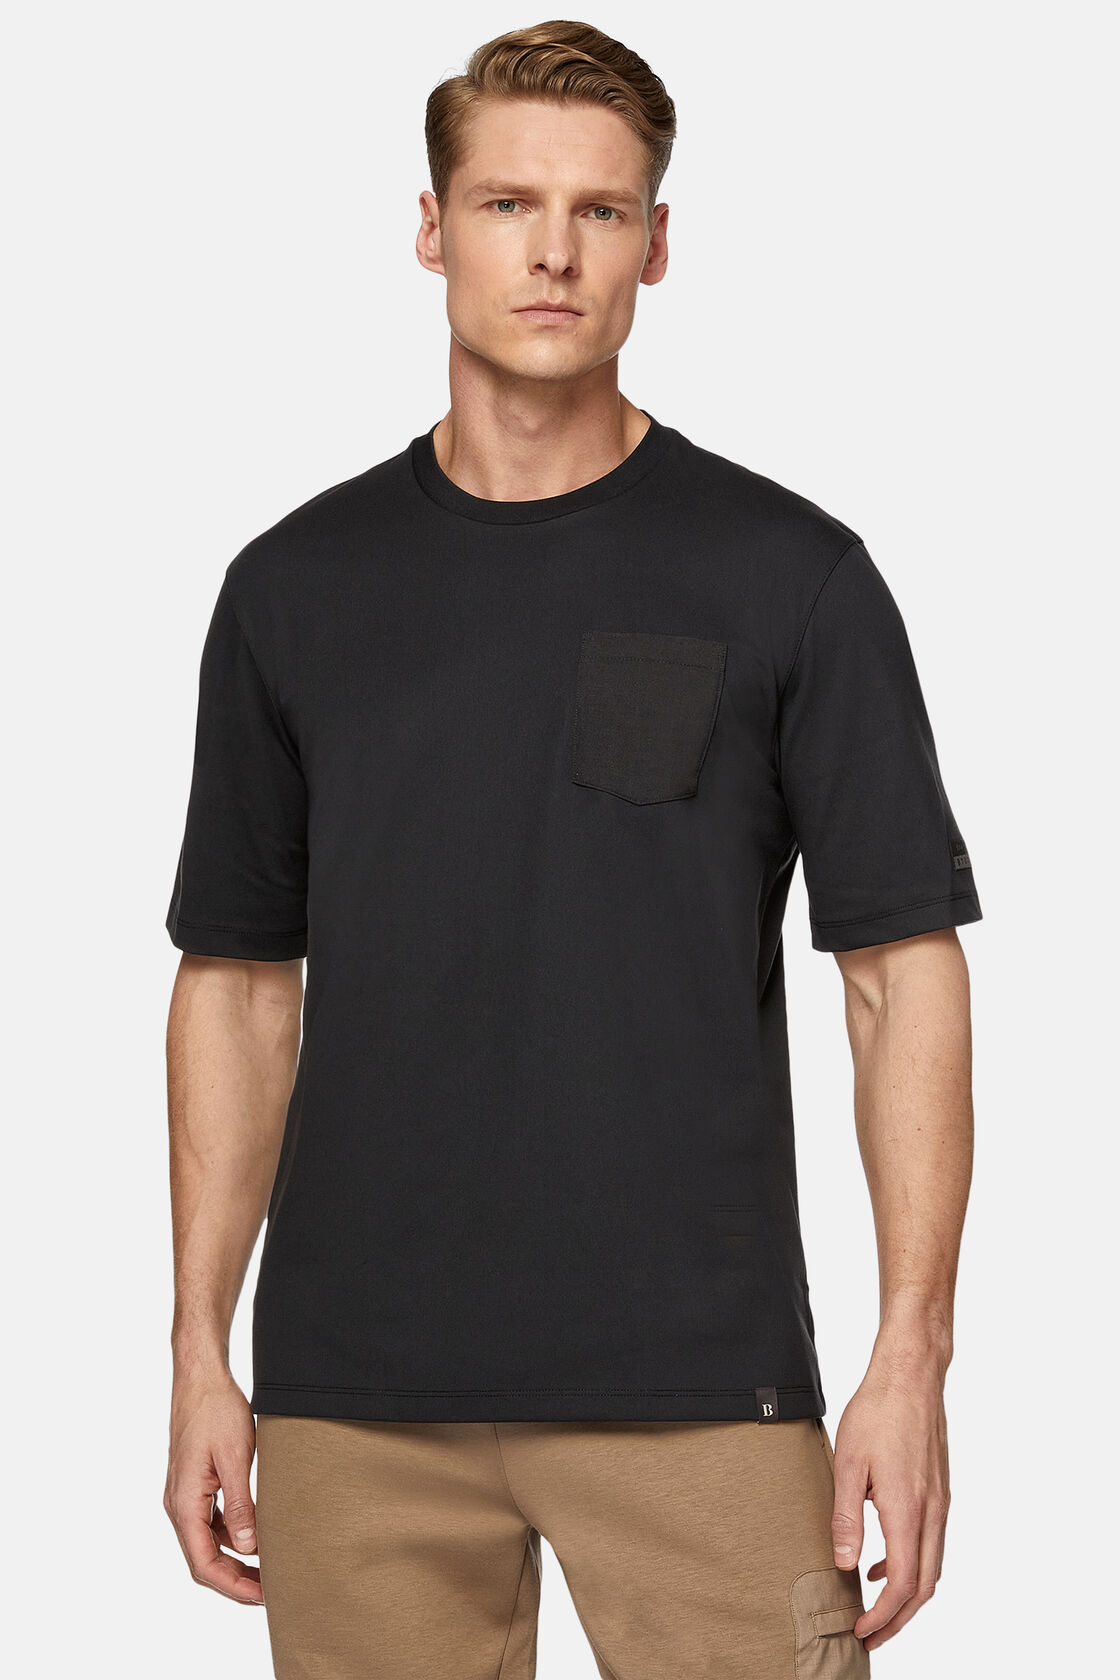 Κοντομάνικο μπλουζάκι από ζέρσεϊ υψηλών επιδόσεων, Charcoal, hi-res